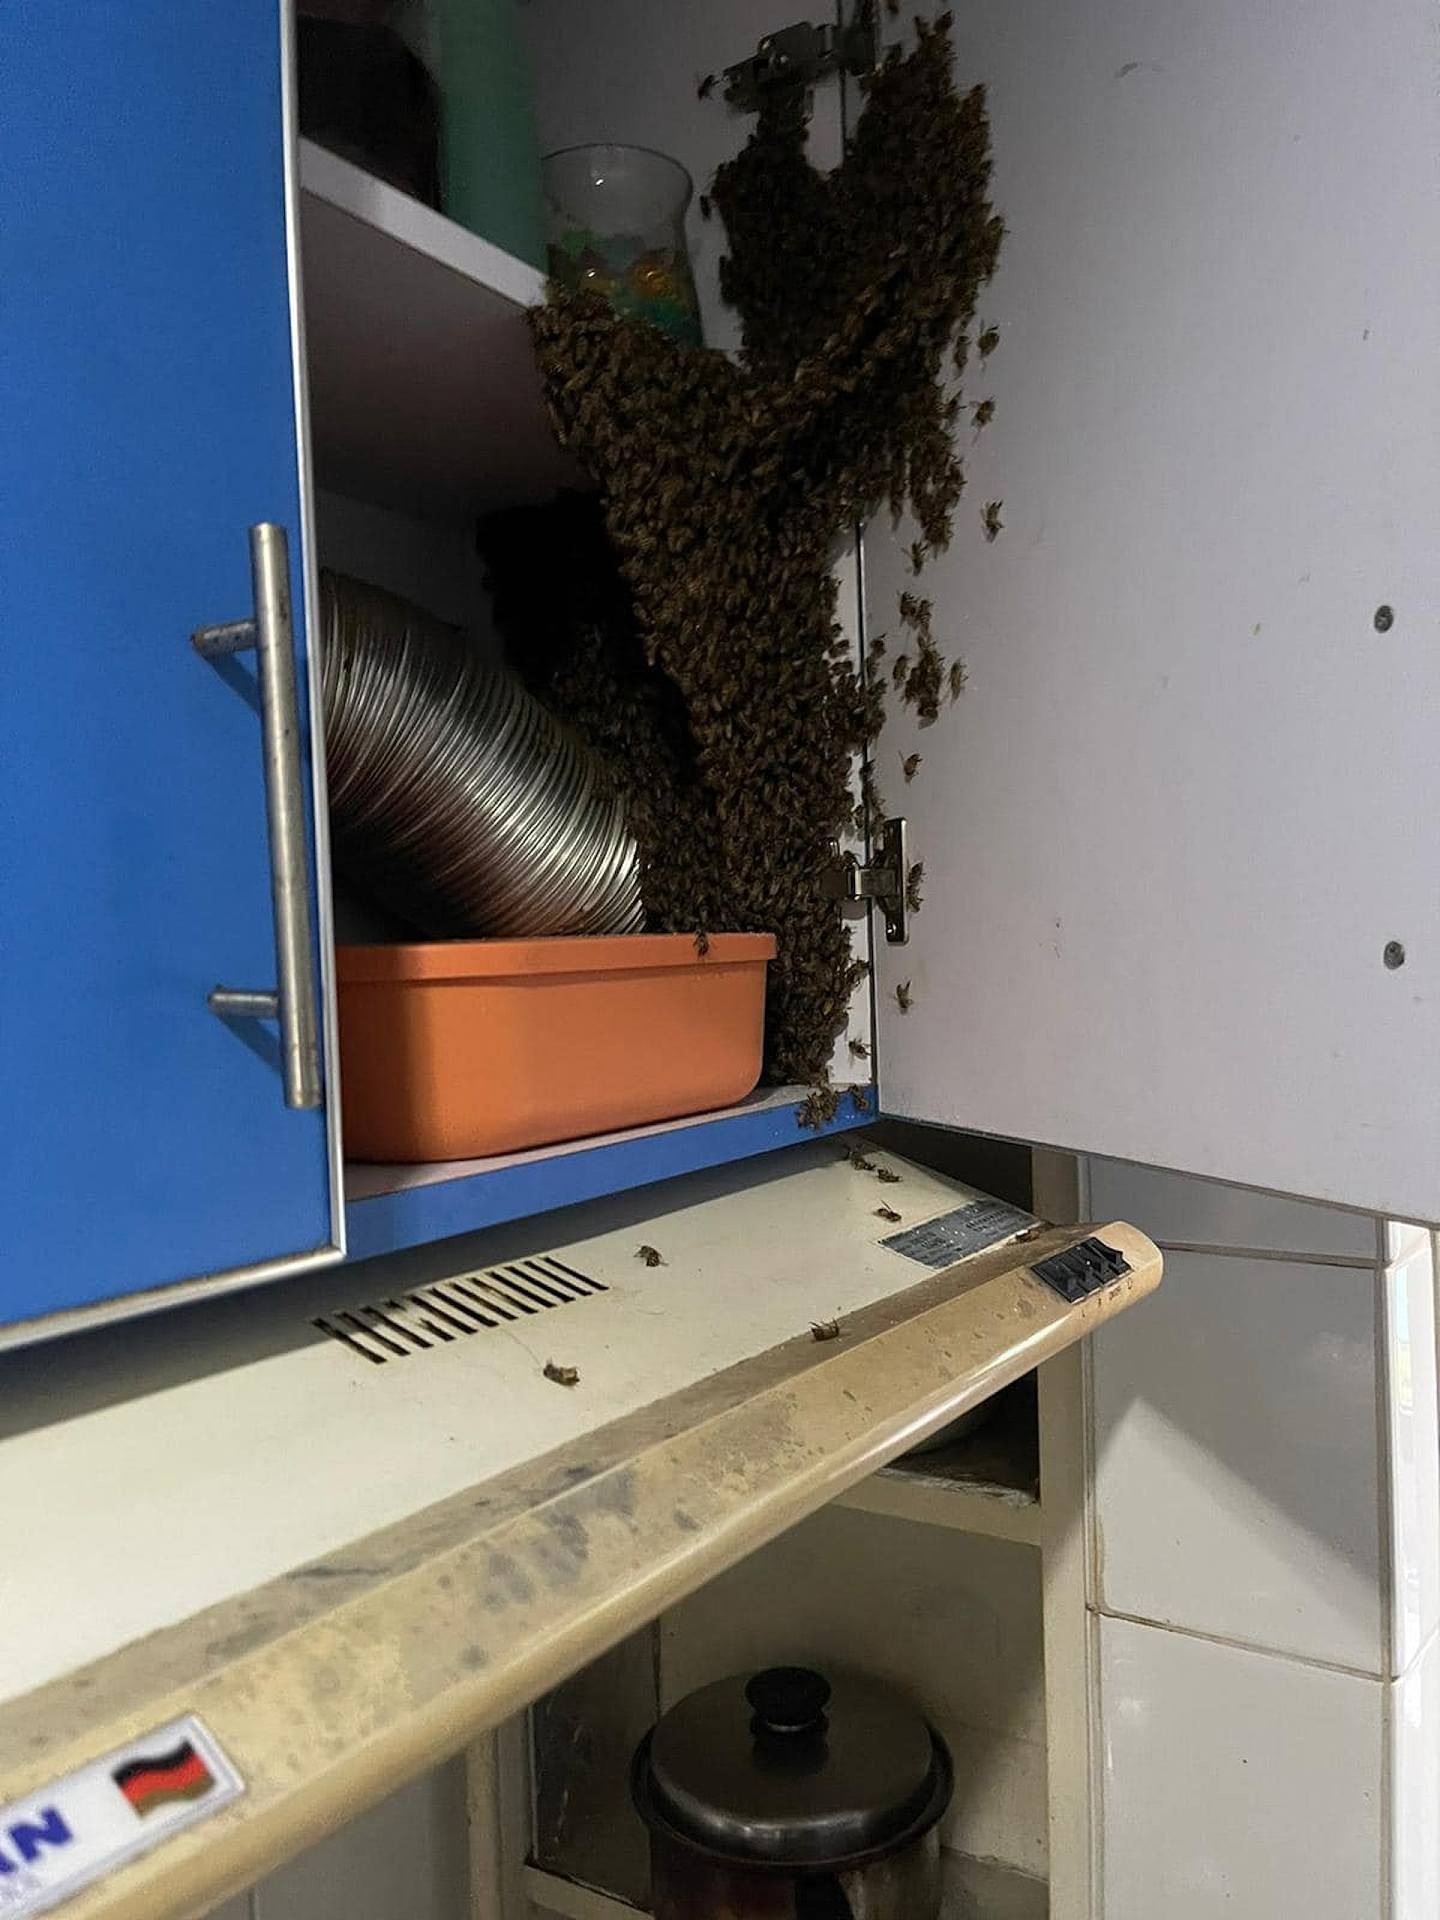 有荃湾福来村居民于网上发文表示，她日前进入厨房，发现橱柜于一日间满布蜜蜂。 （fb群组「荃湾人」图片）